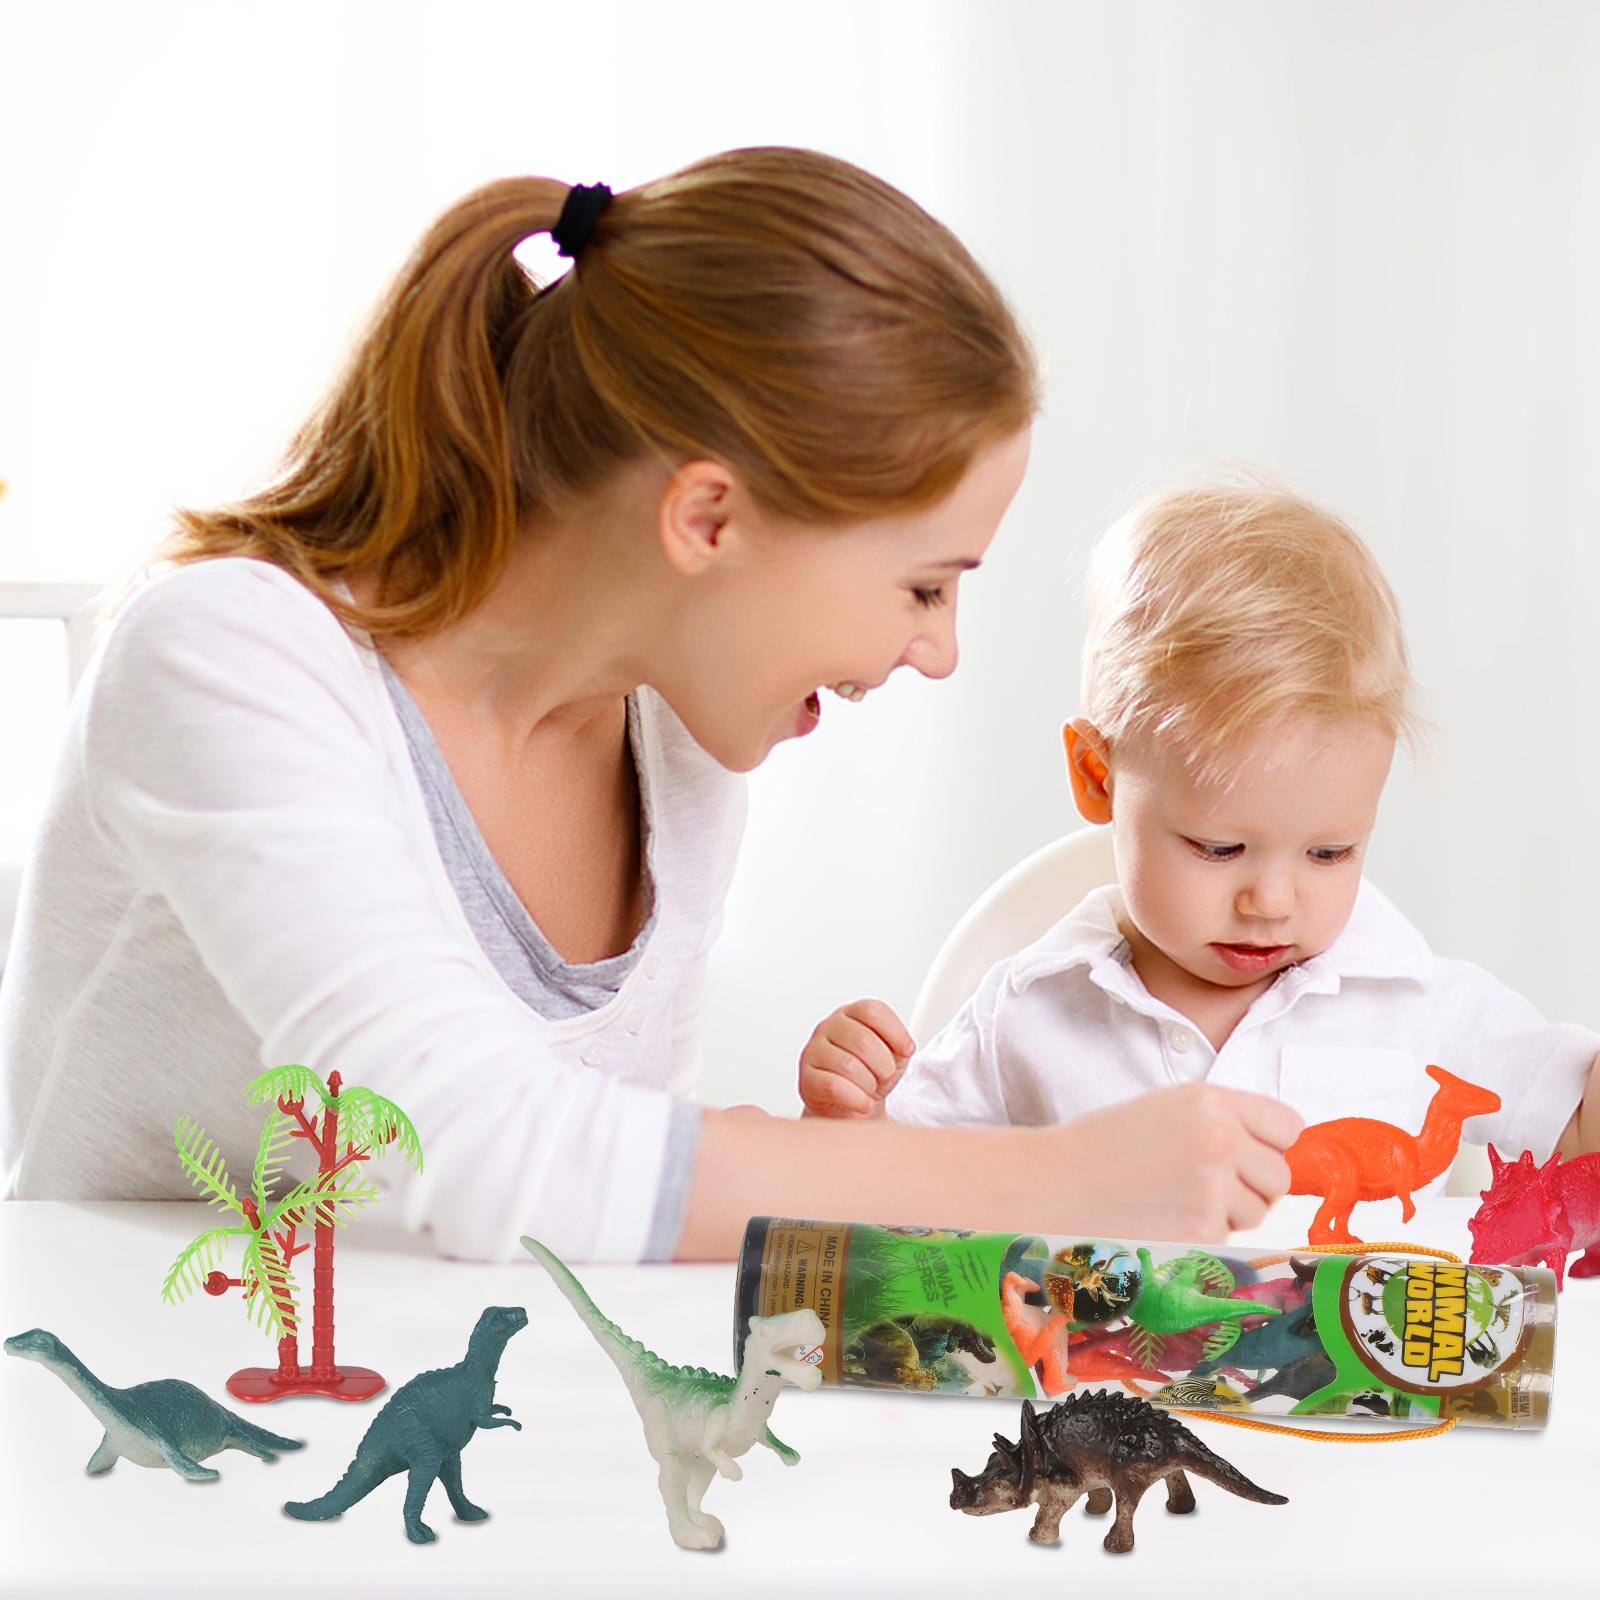 Volbaby Bộ đồ chơi 13 mô hình khủng long mini kỷ jura cho trẻ em từ 3 tuổi - INTL